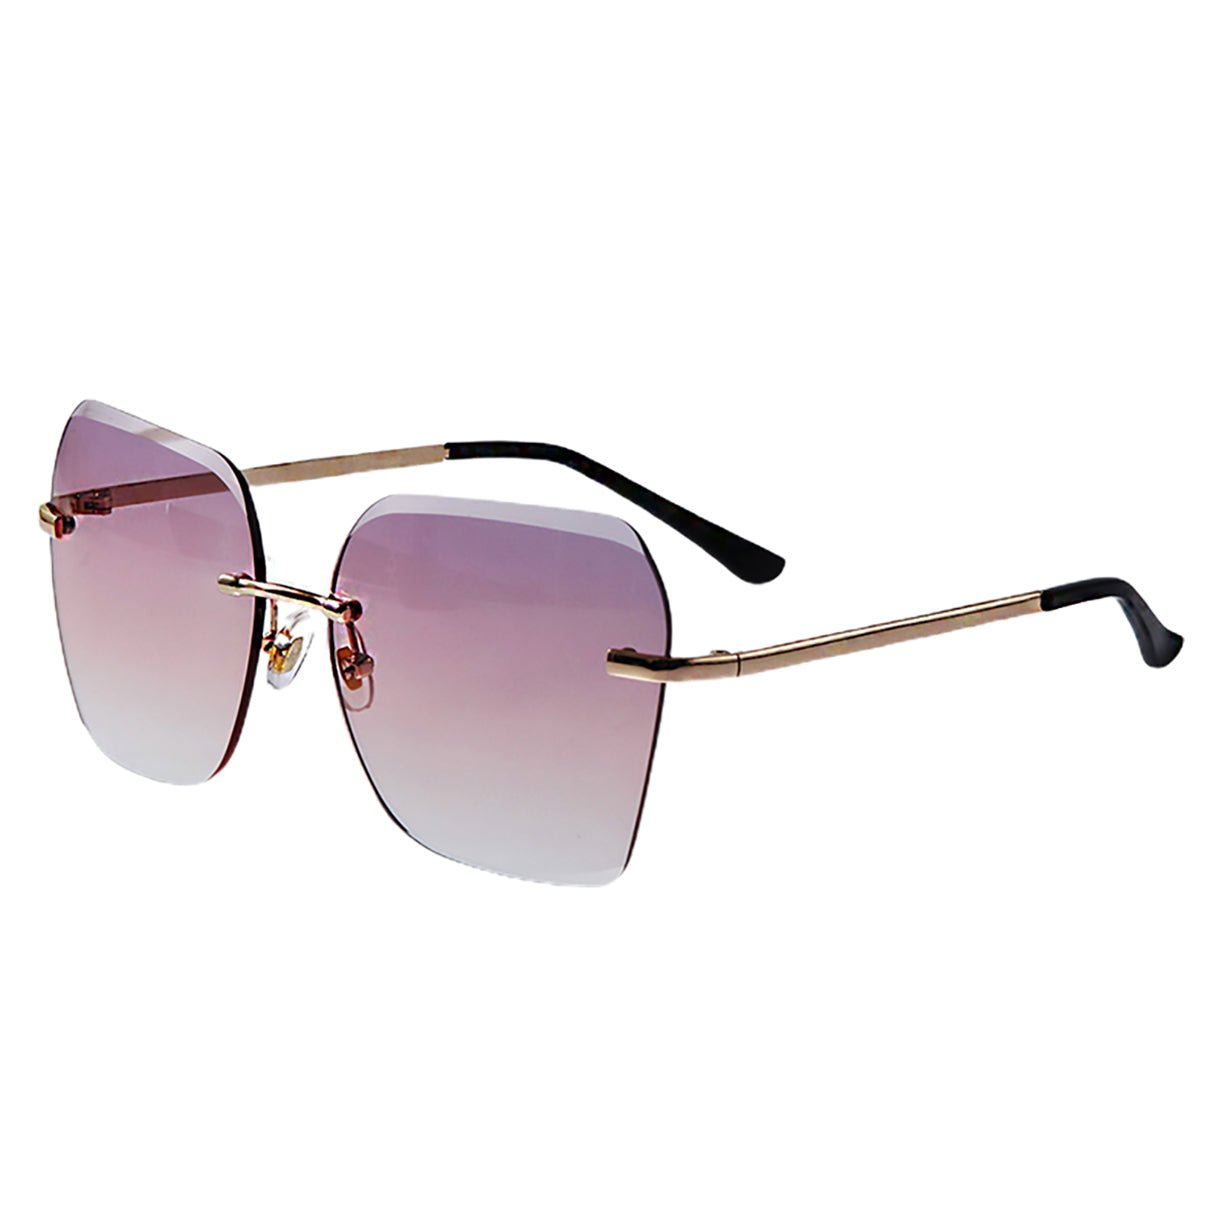 Trendy two tone rimless sunglasses - starcopia design store